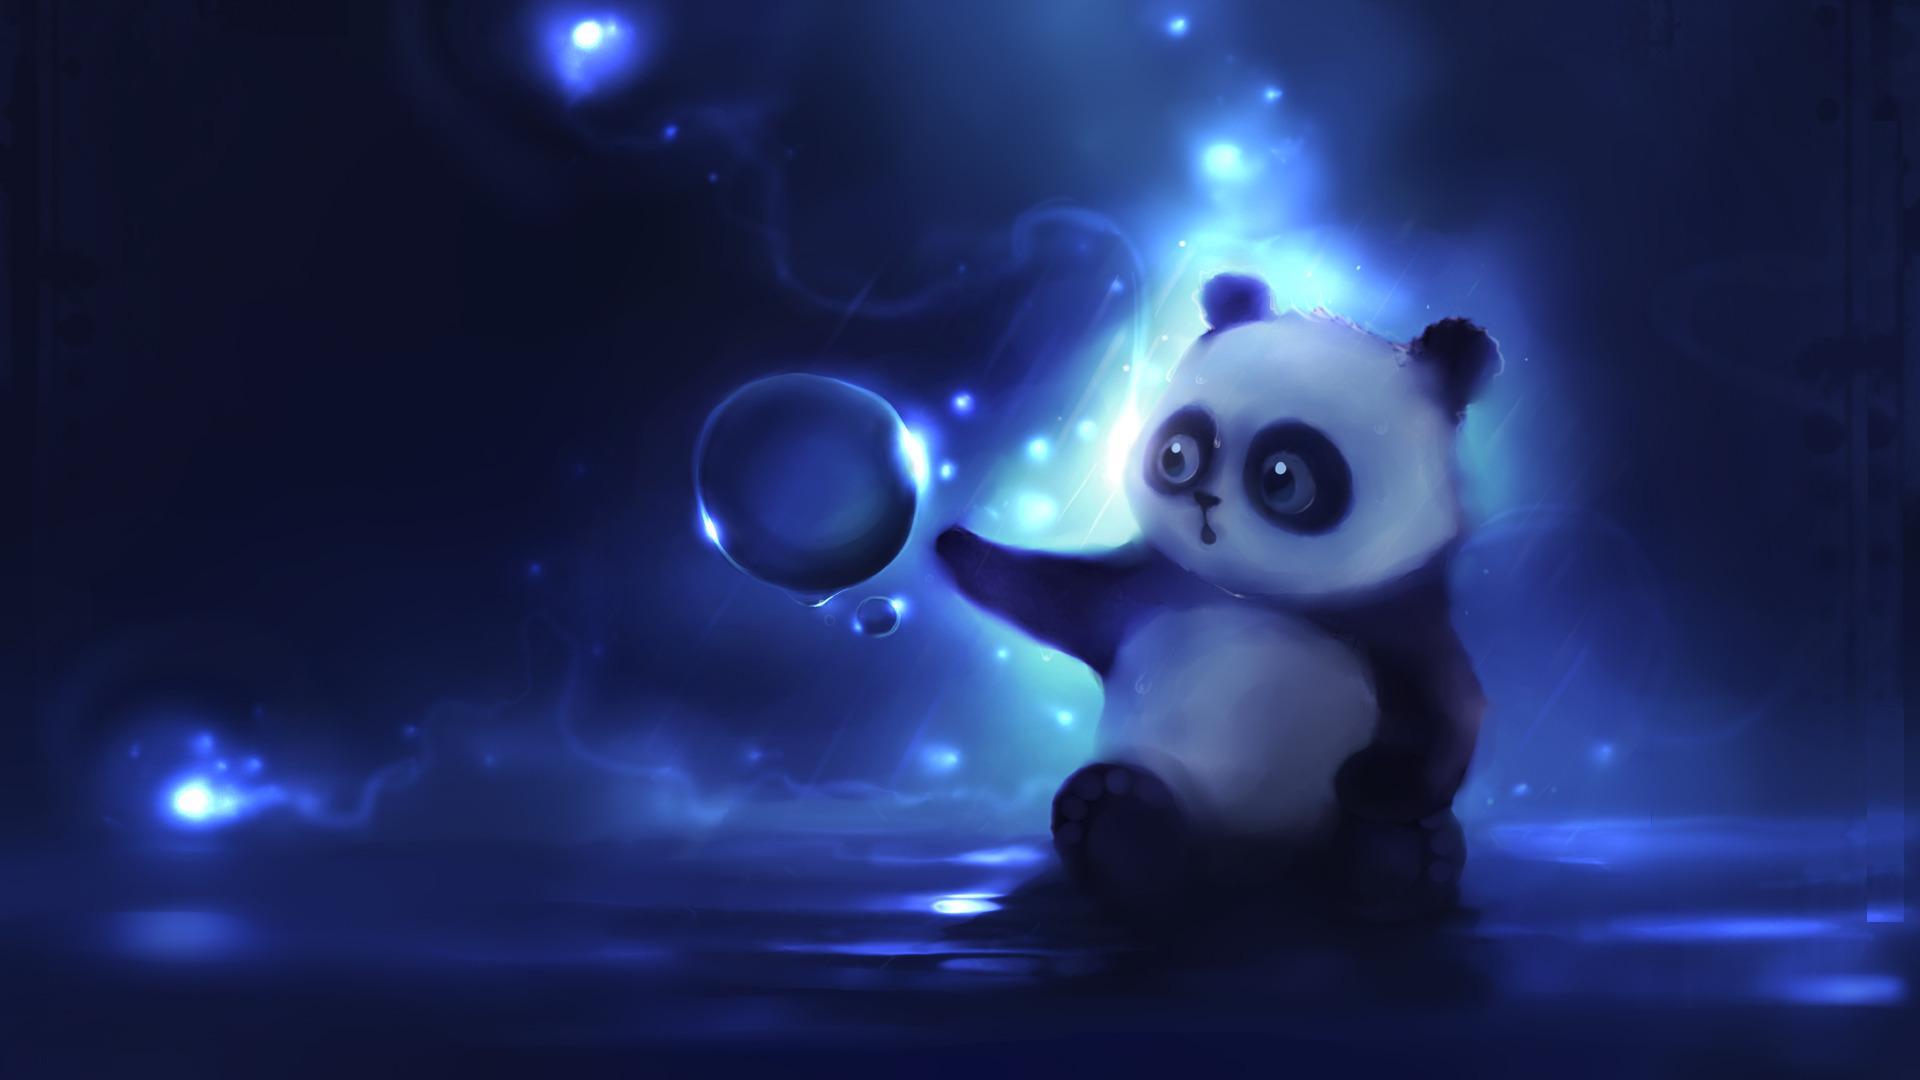 Cute Animated Moving Wallpaper For Desktop Panda